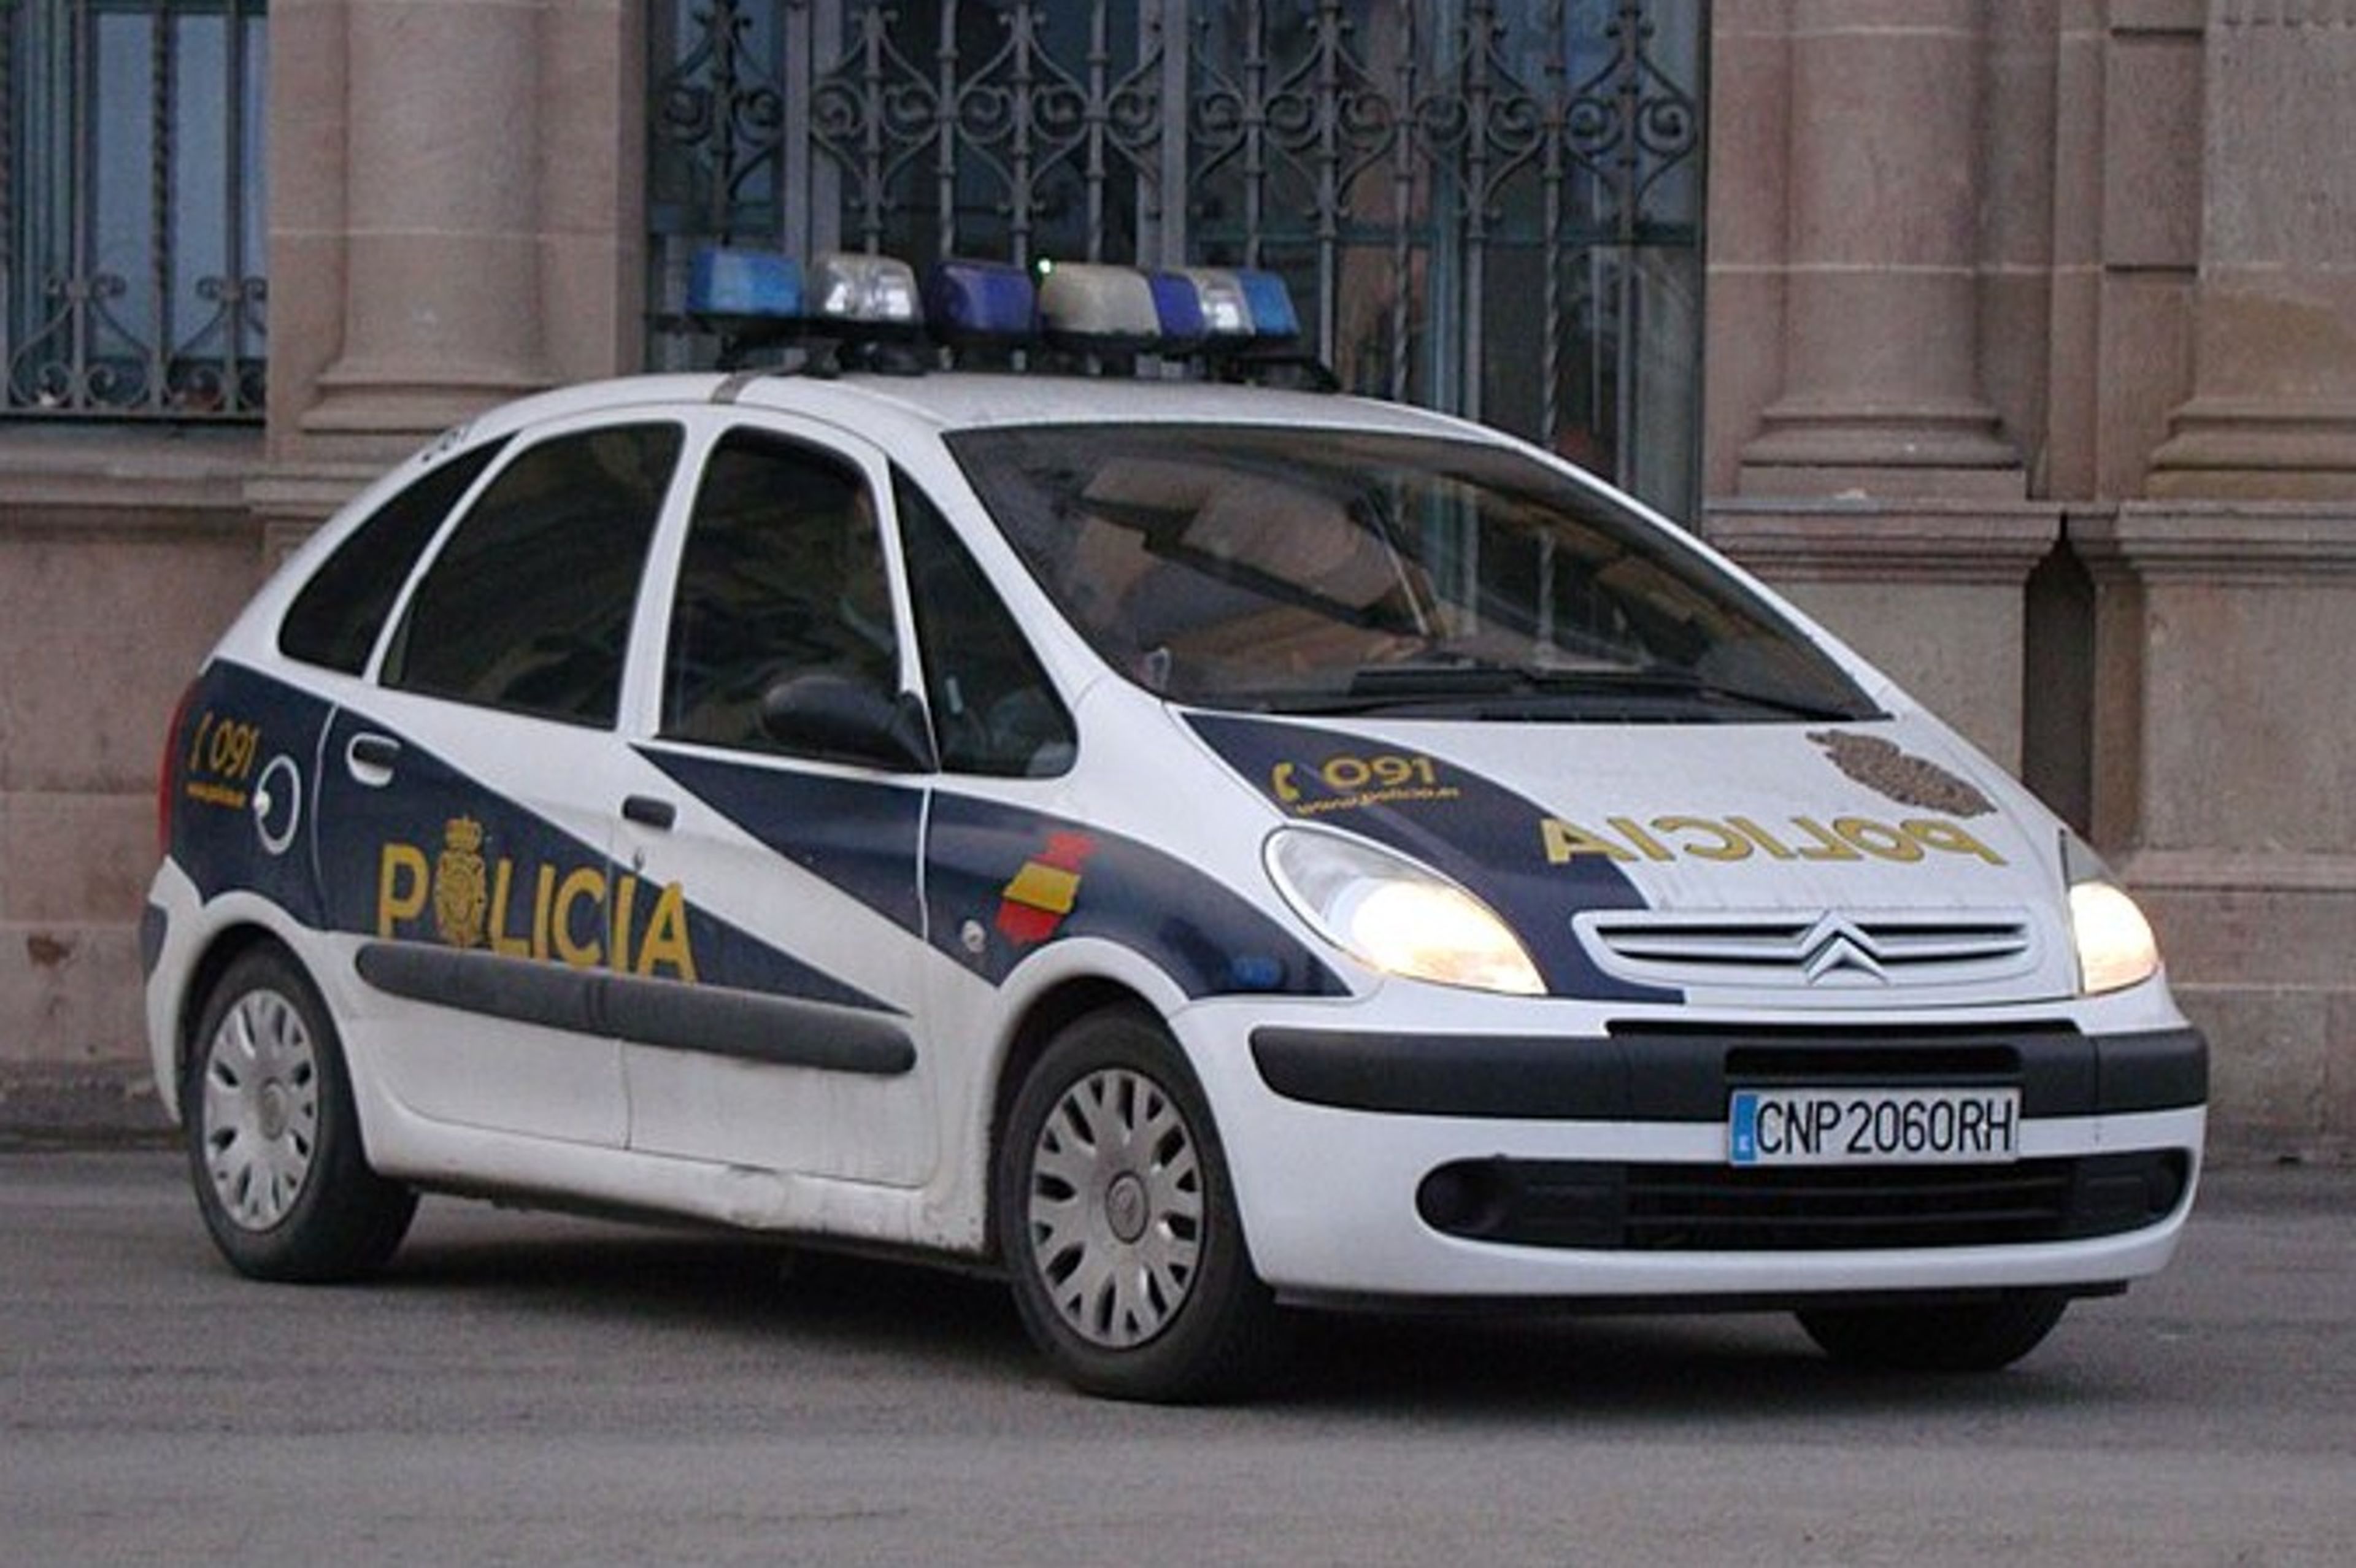 El Citroën Xsara Picasso fue el coche zeta más mítico de la Policía